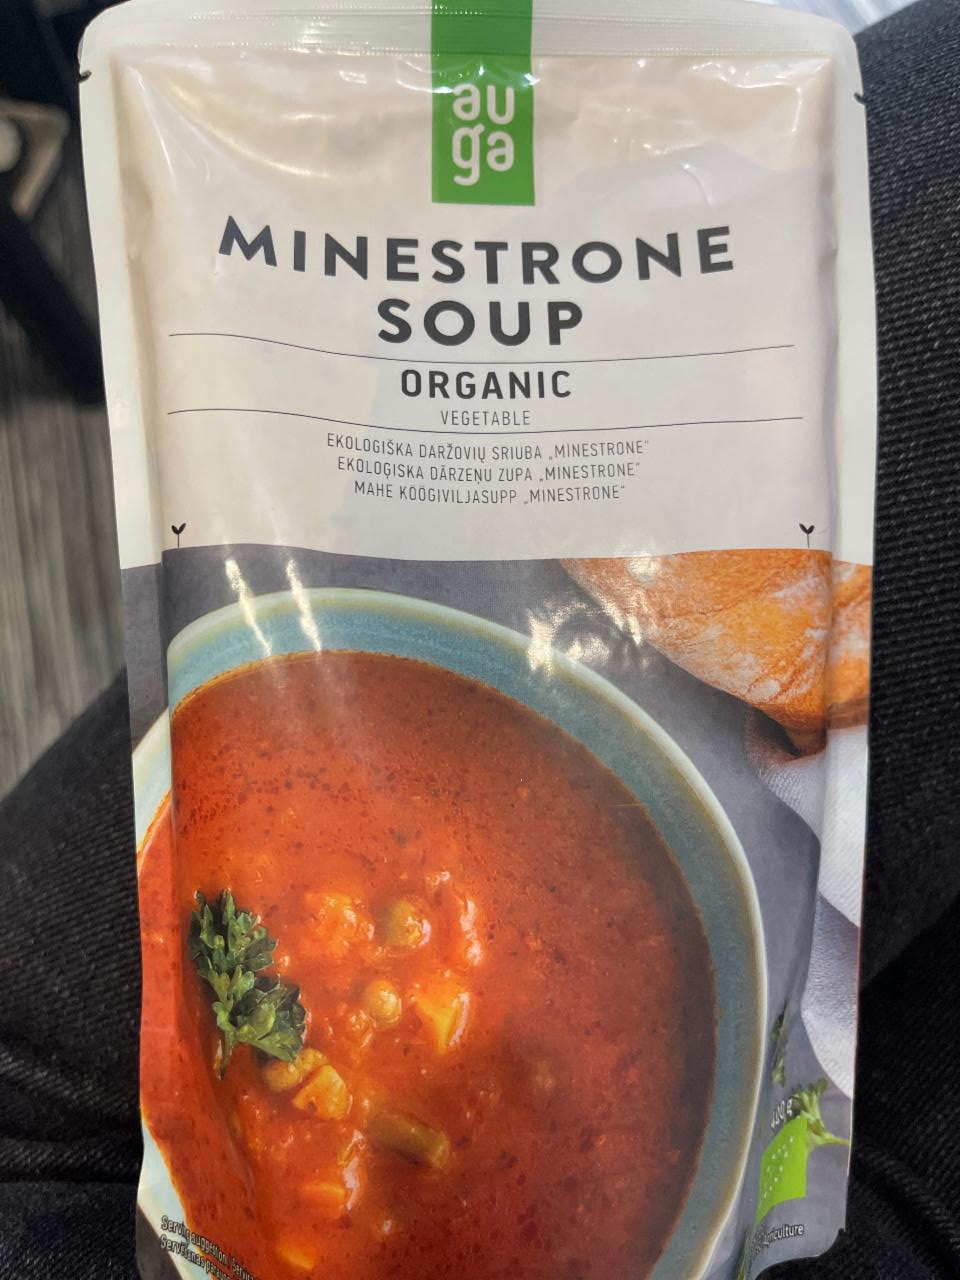 Фото - Суп Минестроне Soup Minestrone Organic Vegetable Auga